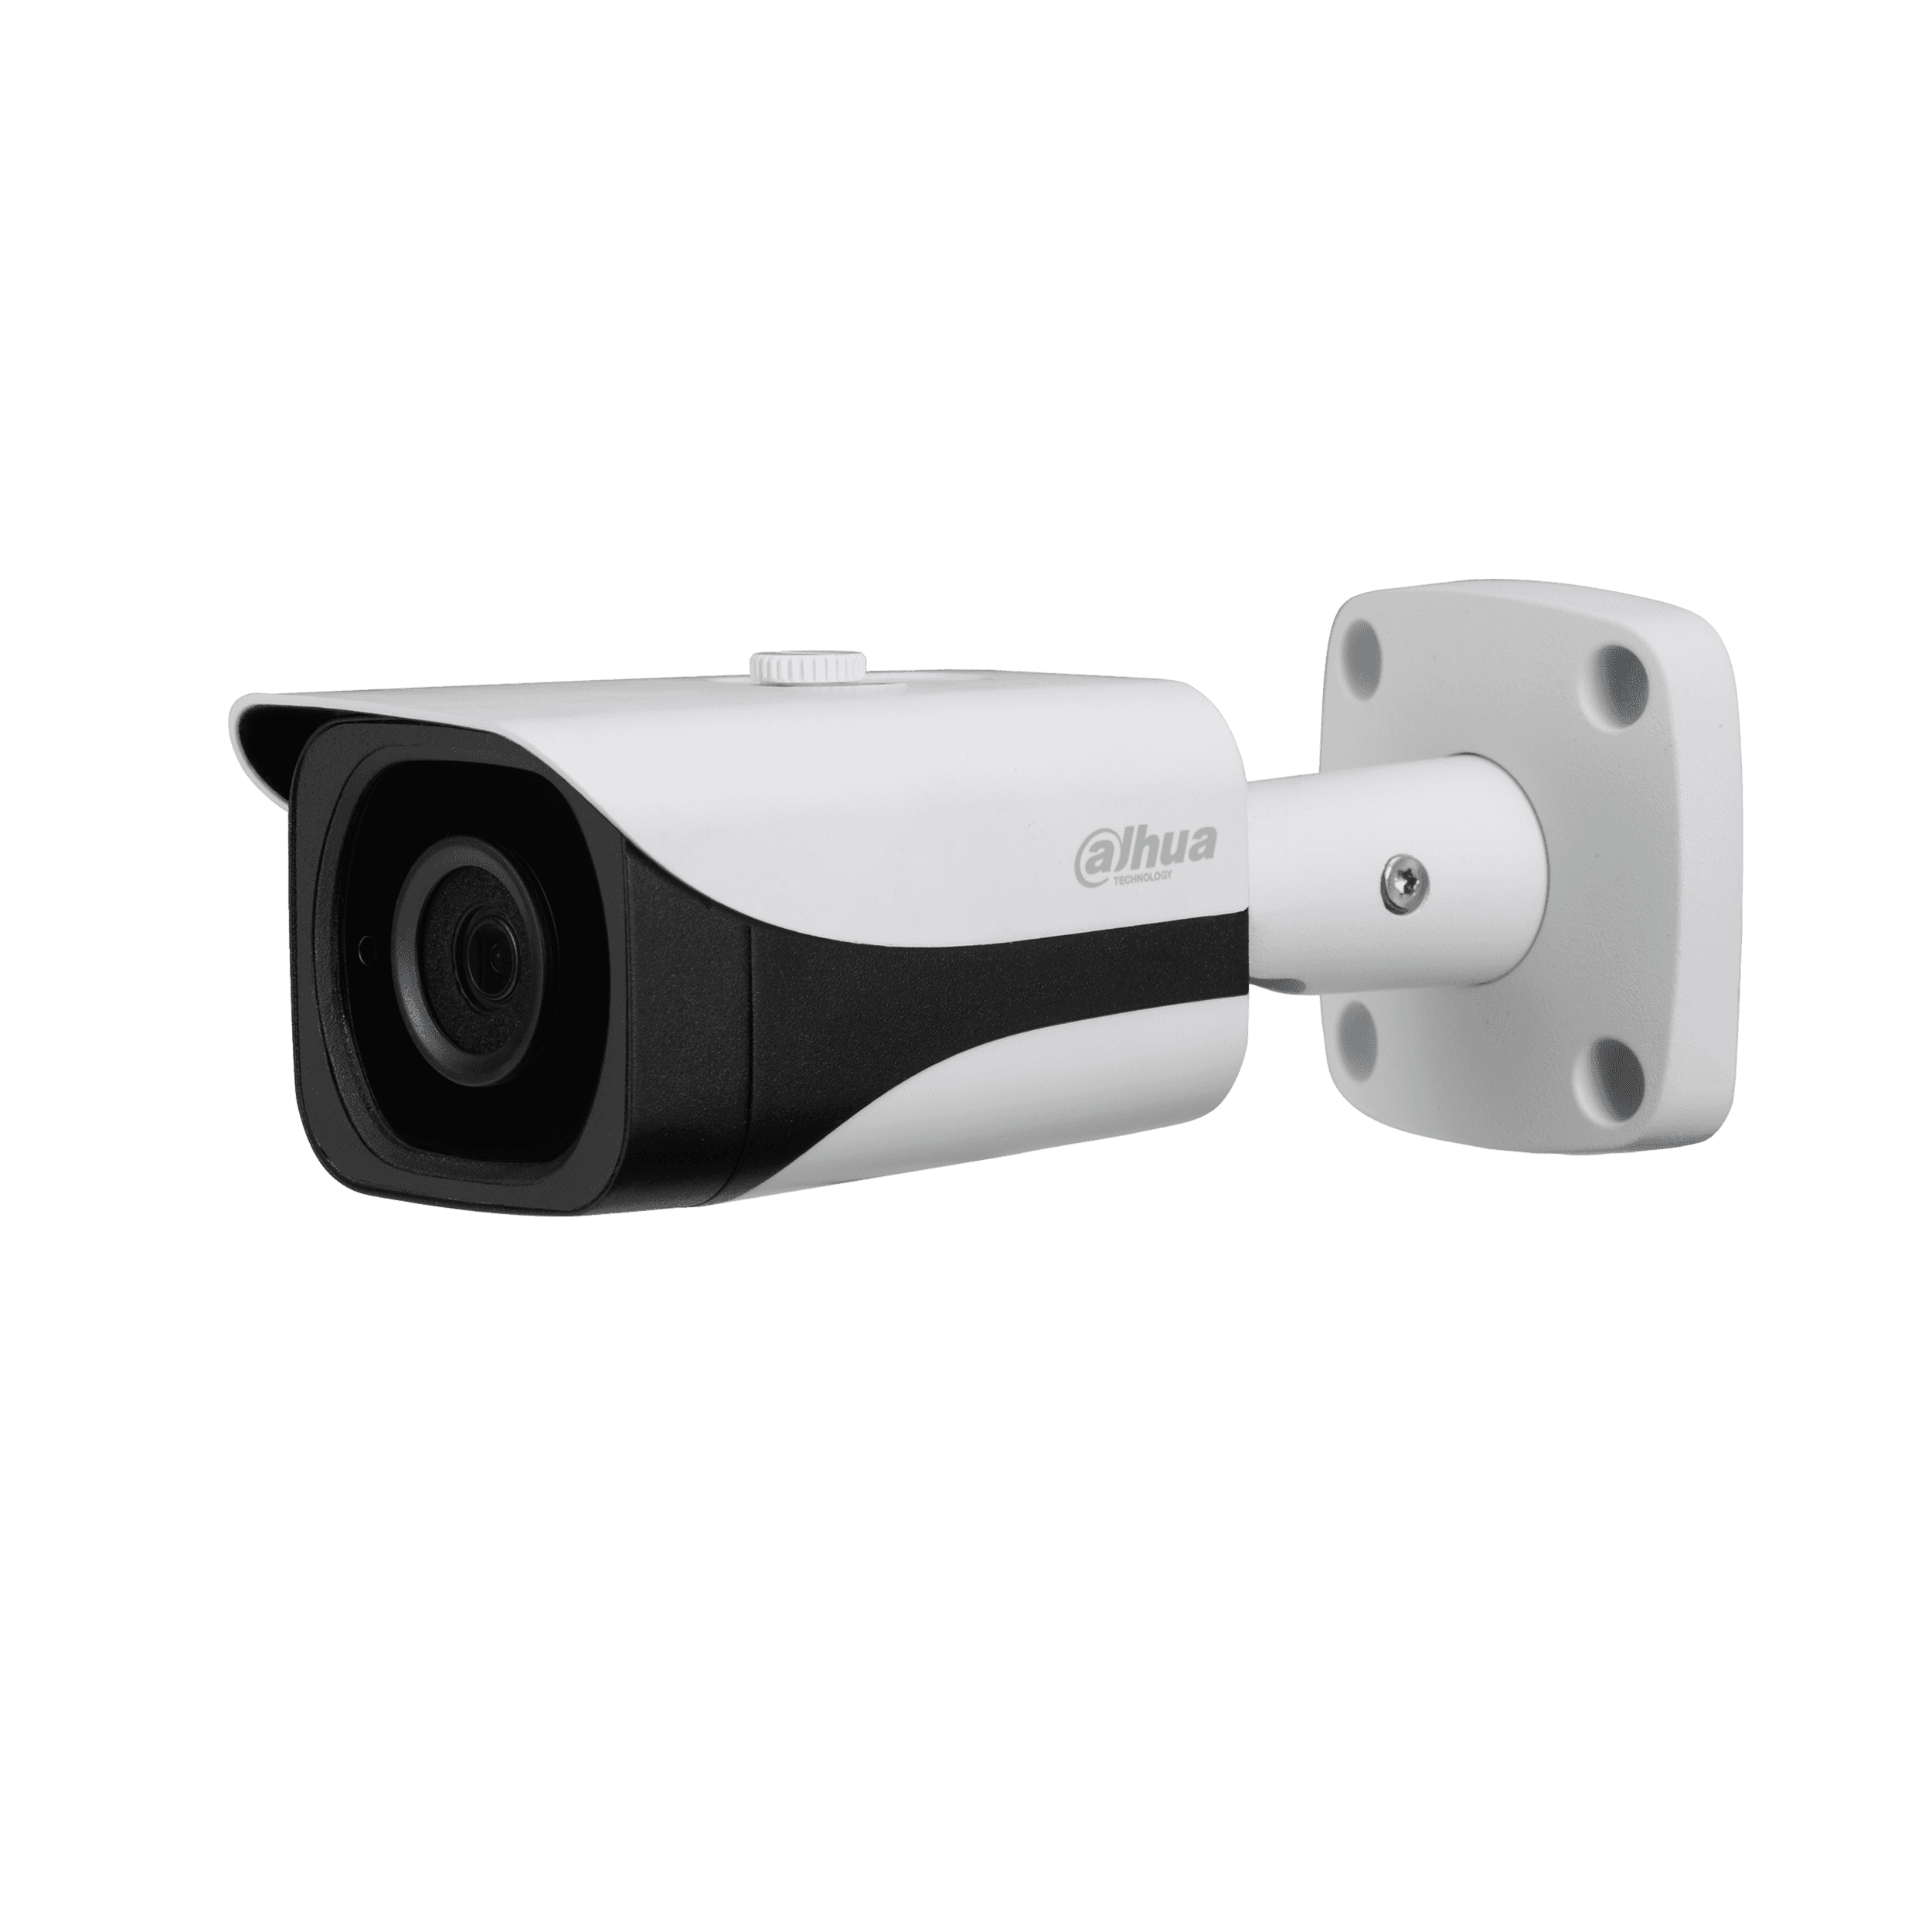 Camara de Seguridad Bullet HD 720P Multiformato SMART IR 30  Mts,HAC-HFW1100S-S2 - Compre Camaras de Seguridad Costa Rica